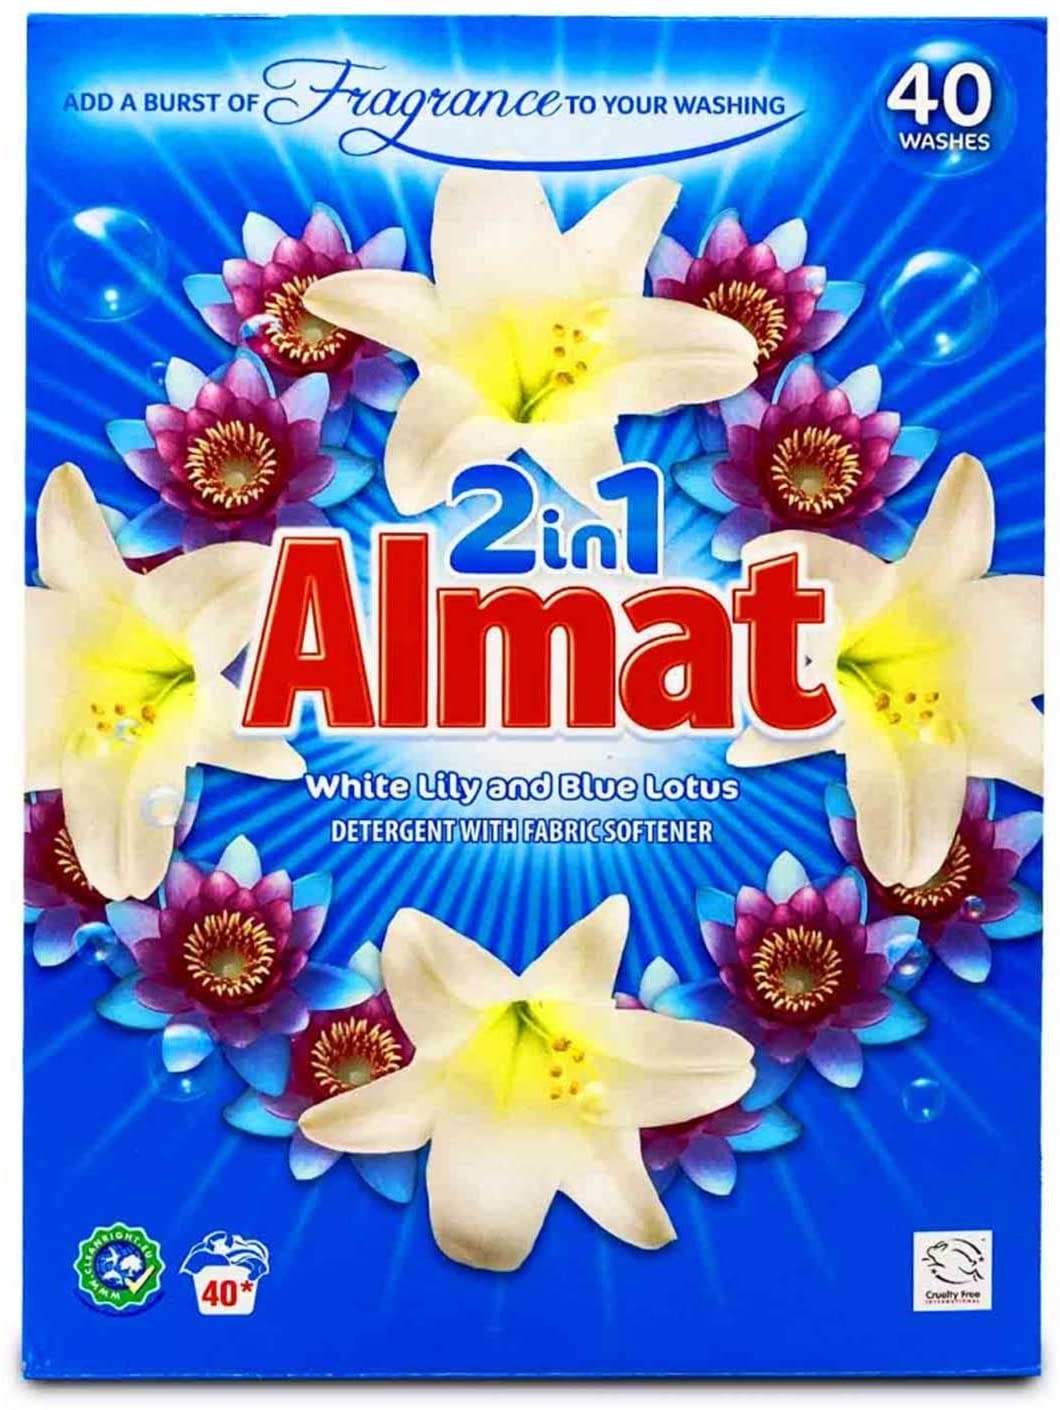 ALDI Almat 2in1 Waschpulver 200 Waschladungen (5 x 40WL), Waschmittel Weisse Lilie & Blauer Lotus Duft, Vollwaschmittel mit integriertem Weichspüler